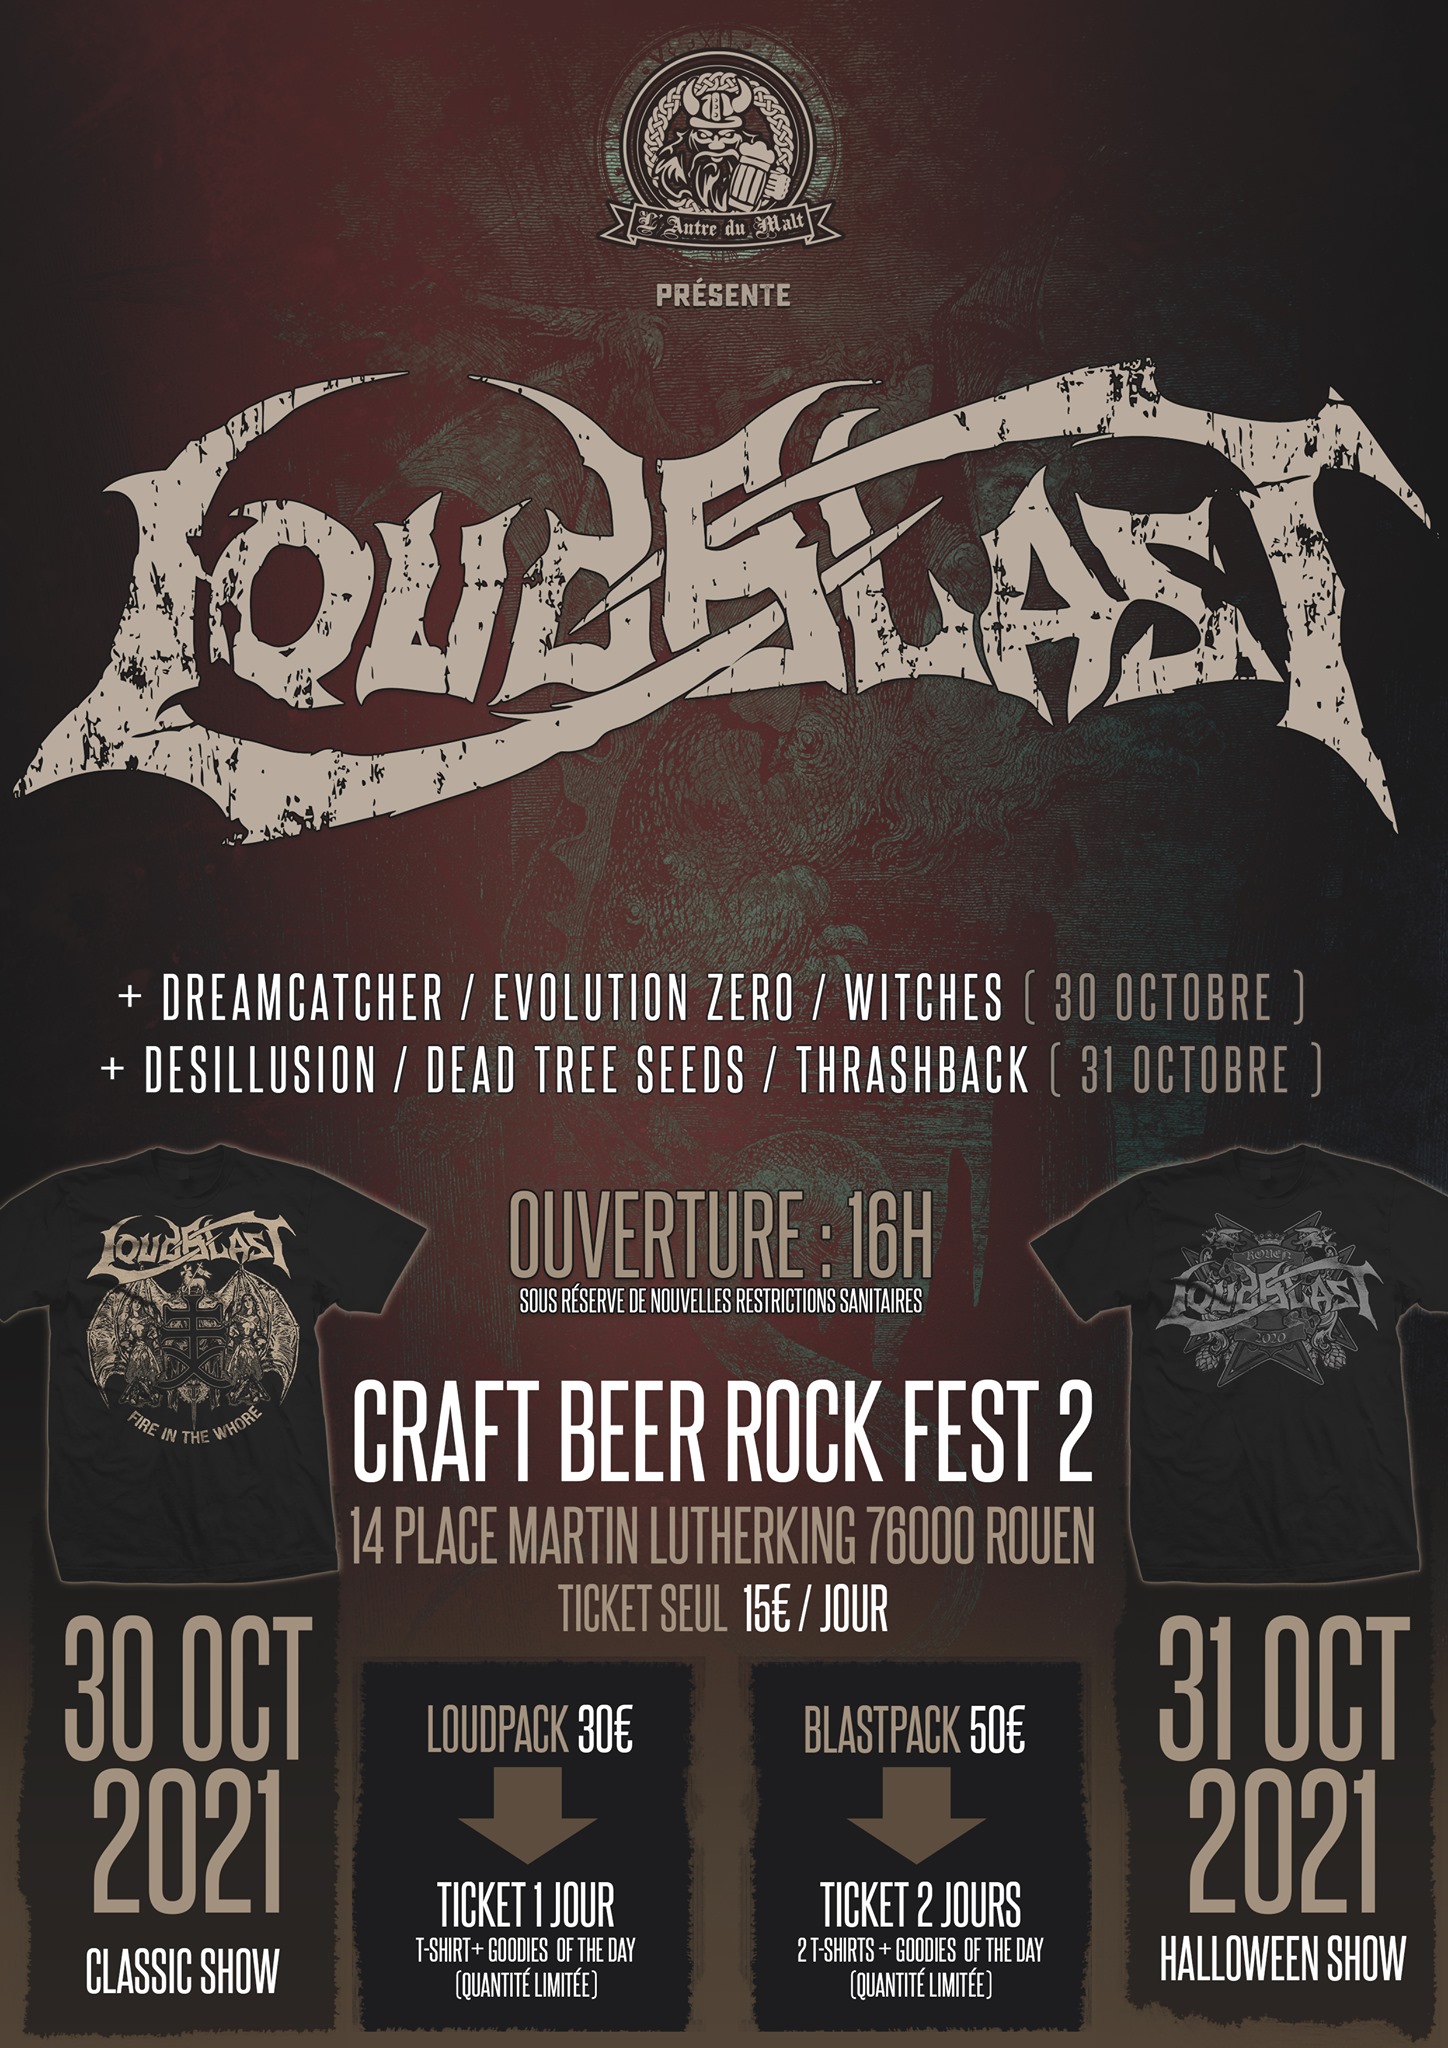 Witches flyer Loudblast + Witches + Evolution Zero + Dreamcatcher @ Craft Beer Rock Fest 2 Craft Beer Pub - L'Antre du Malt  Rouen, 76